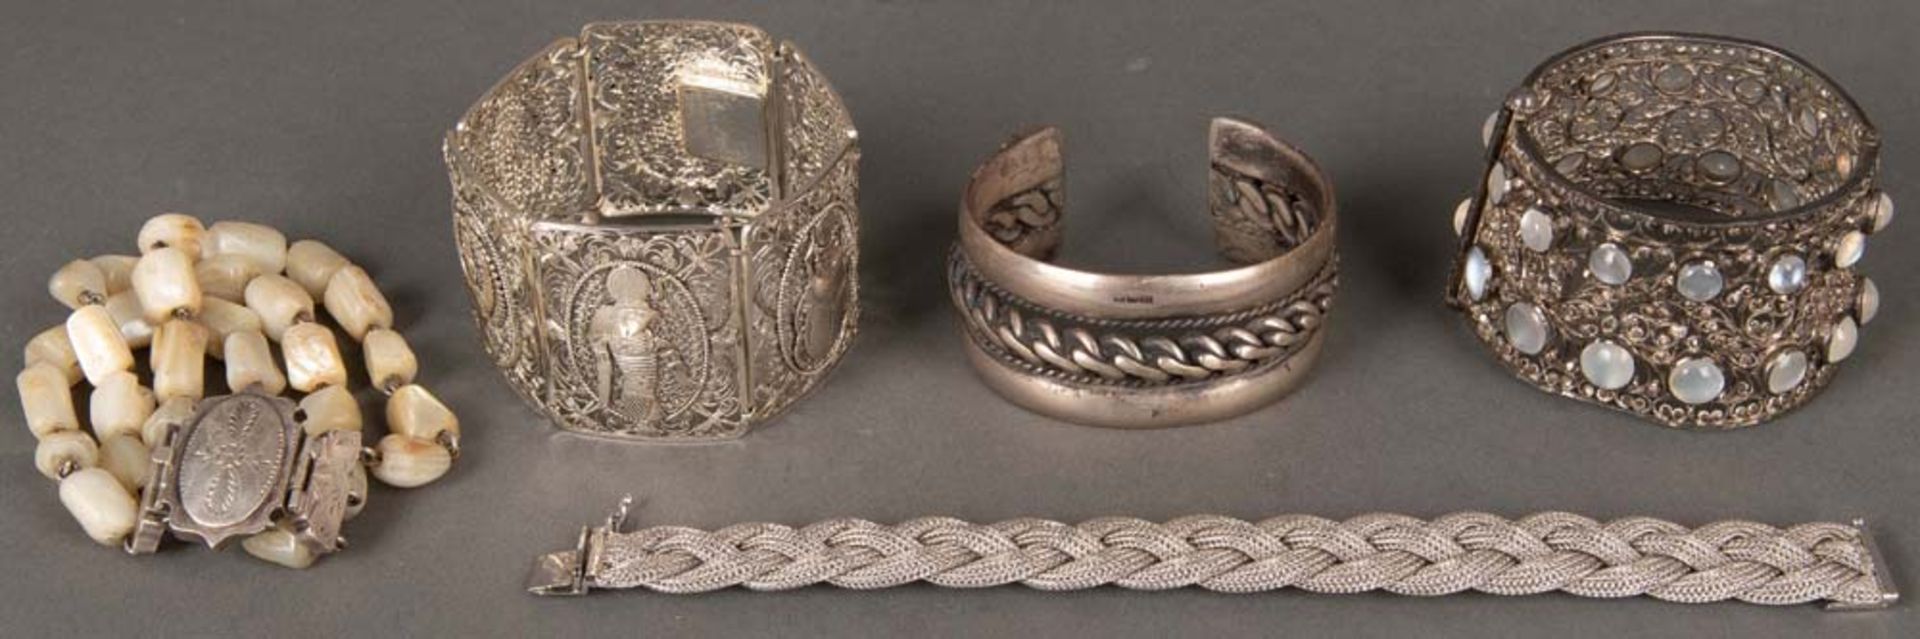 Fünf Armbänder. Silber, ca. 231 g, eines davon besetzt mit Jade.